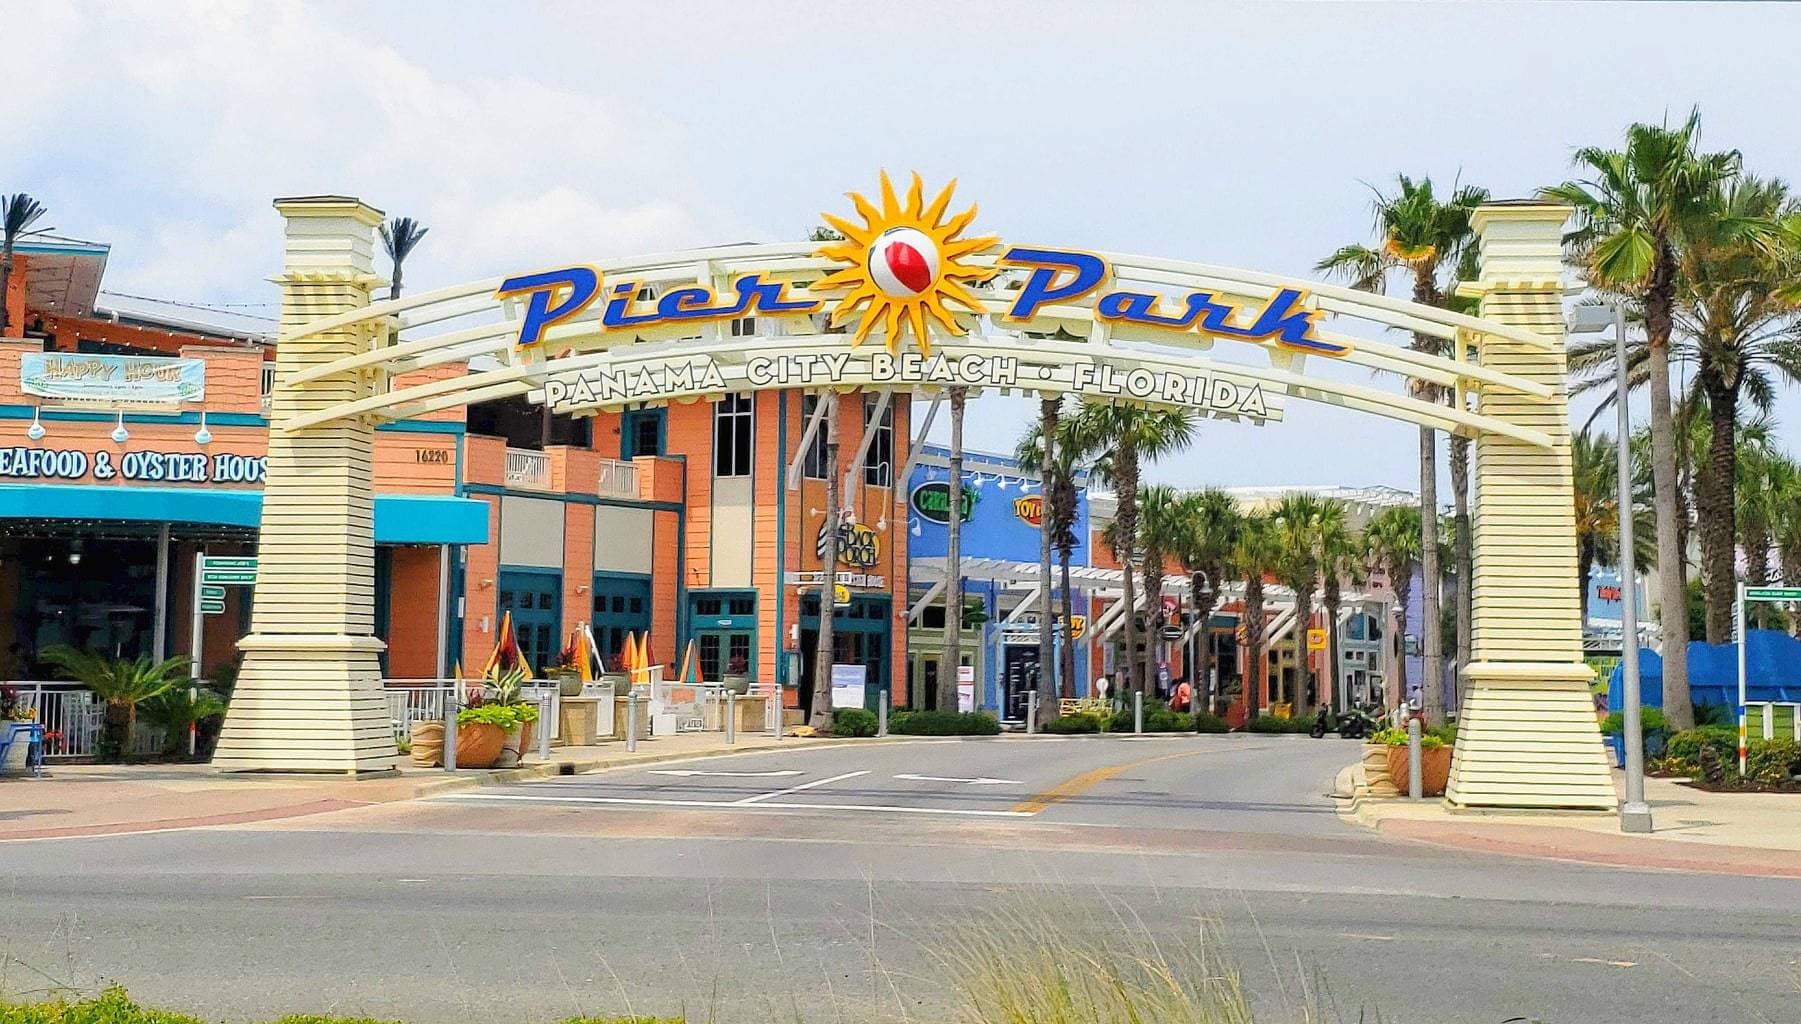 Pier Park, Panama City Beach, Real Fun Beach, Florida Beaches